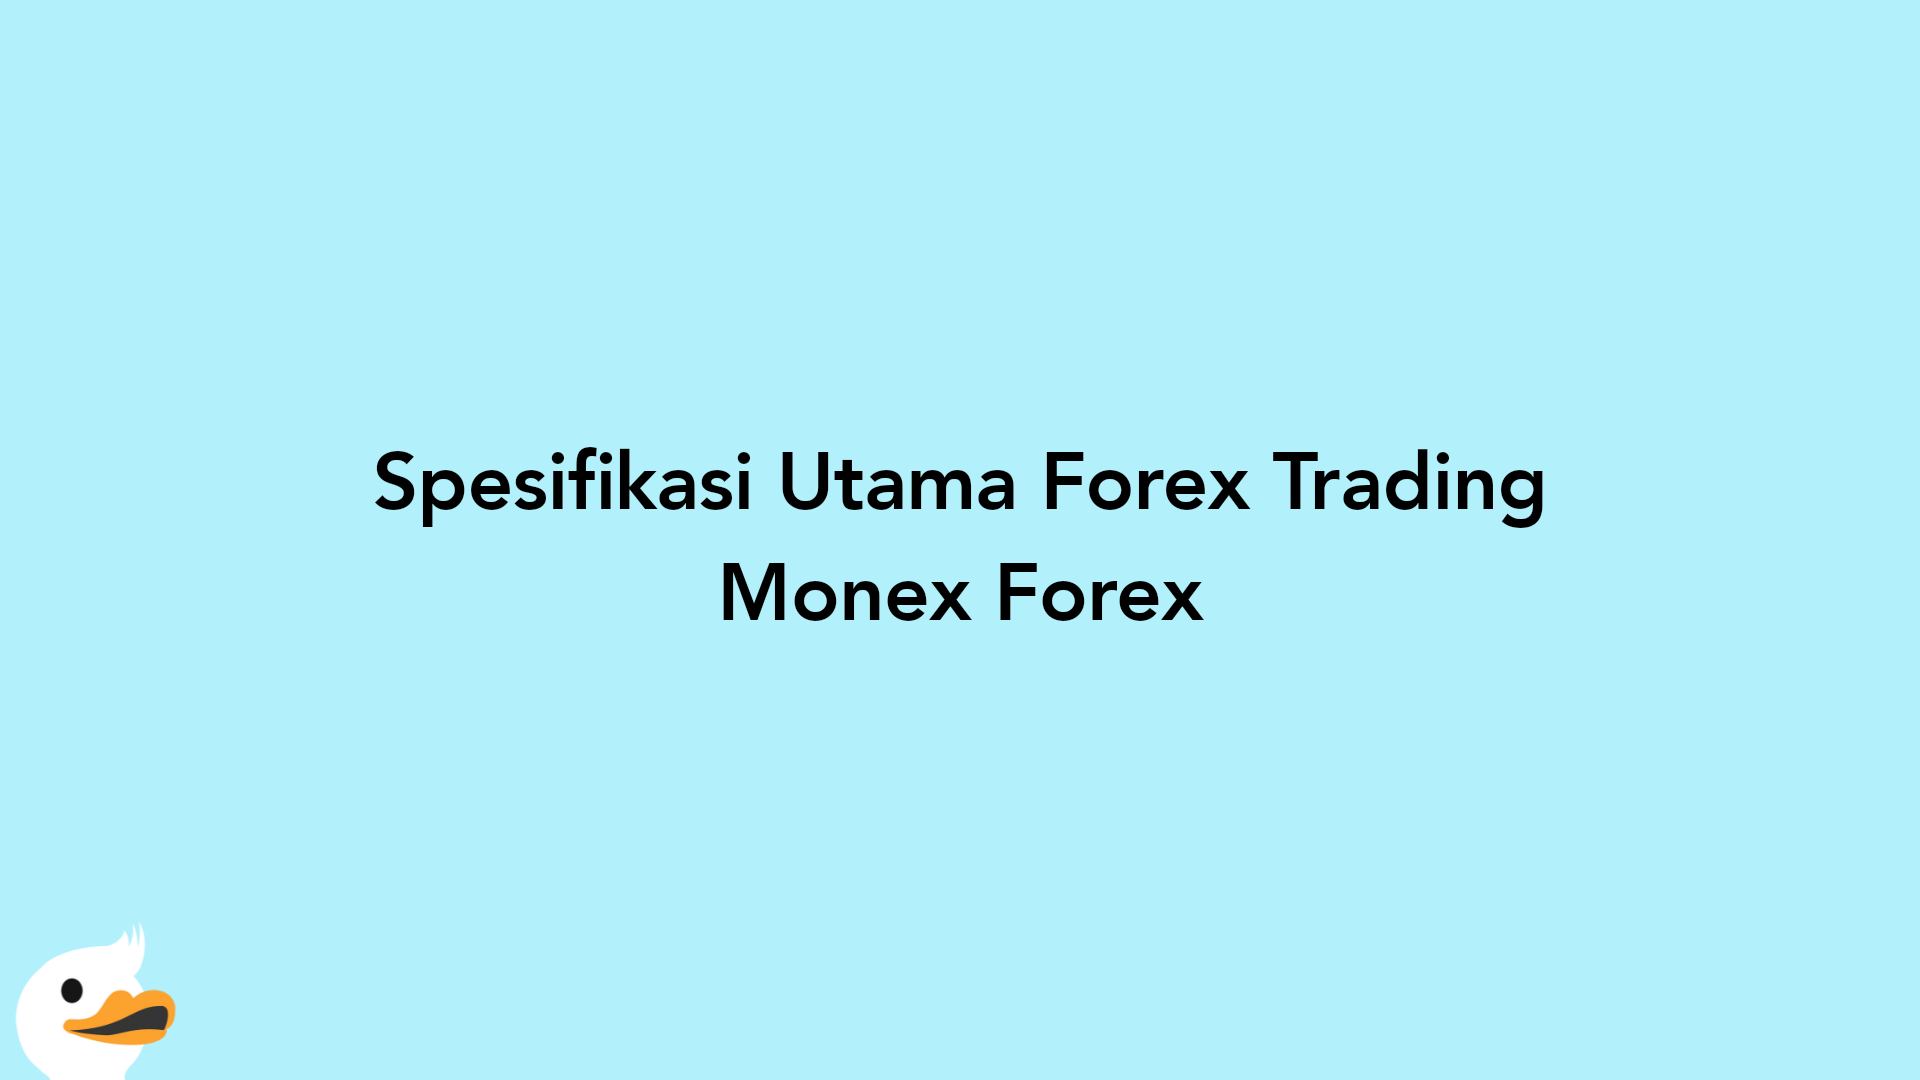 Spesifikasi Utama Forex Trading Monex Forex